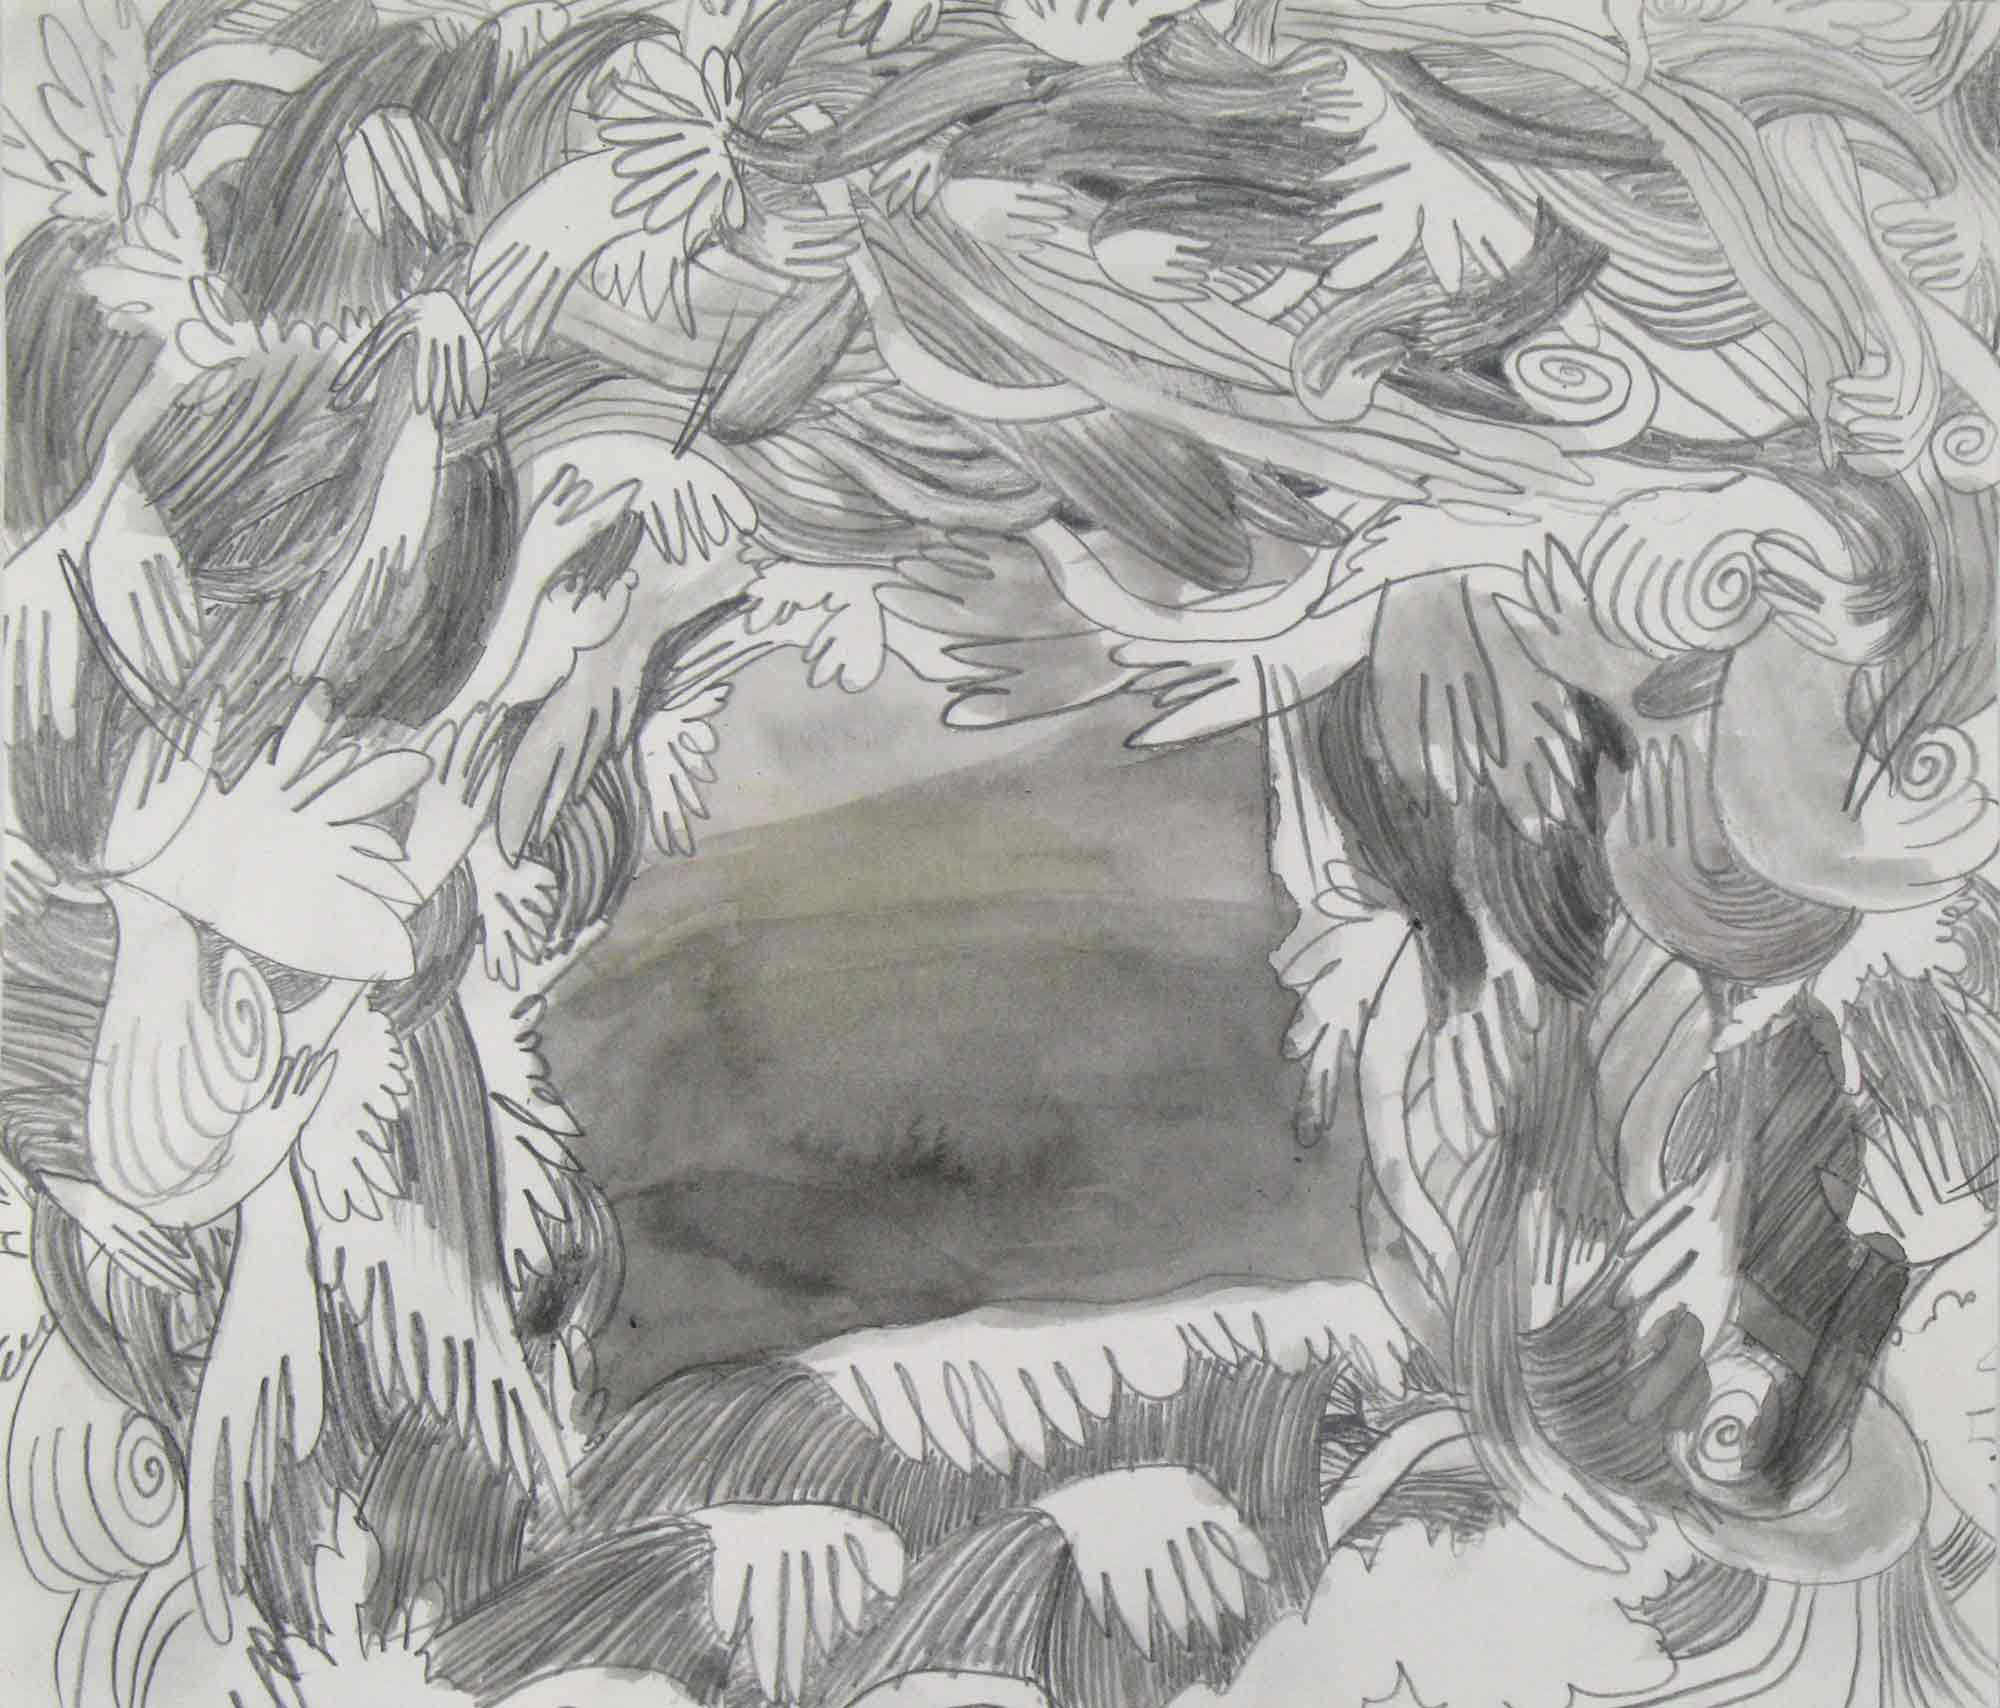   Scheef uitzicht (Crooked view)  potlood, aquarel 23 x 26 cm, 2010 